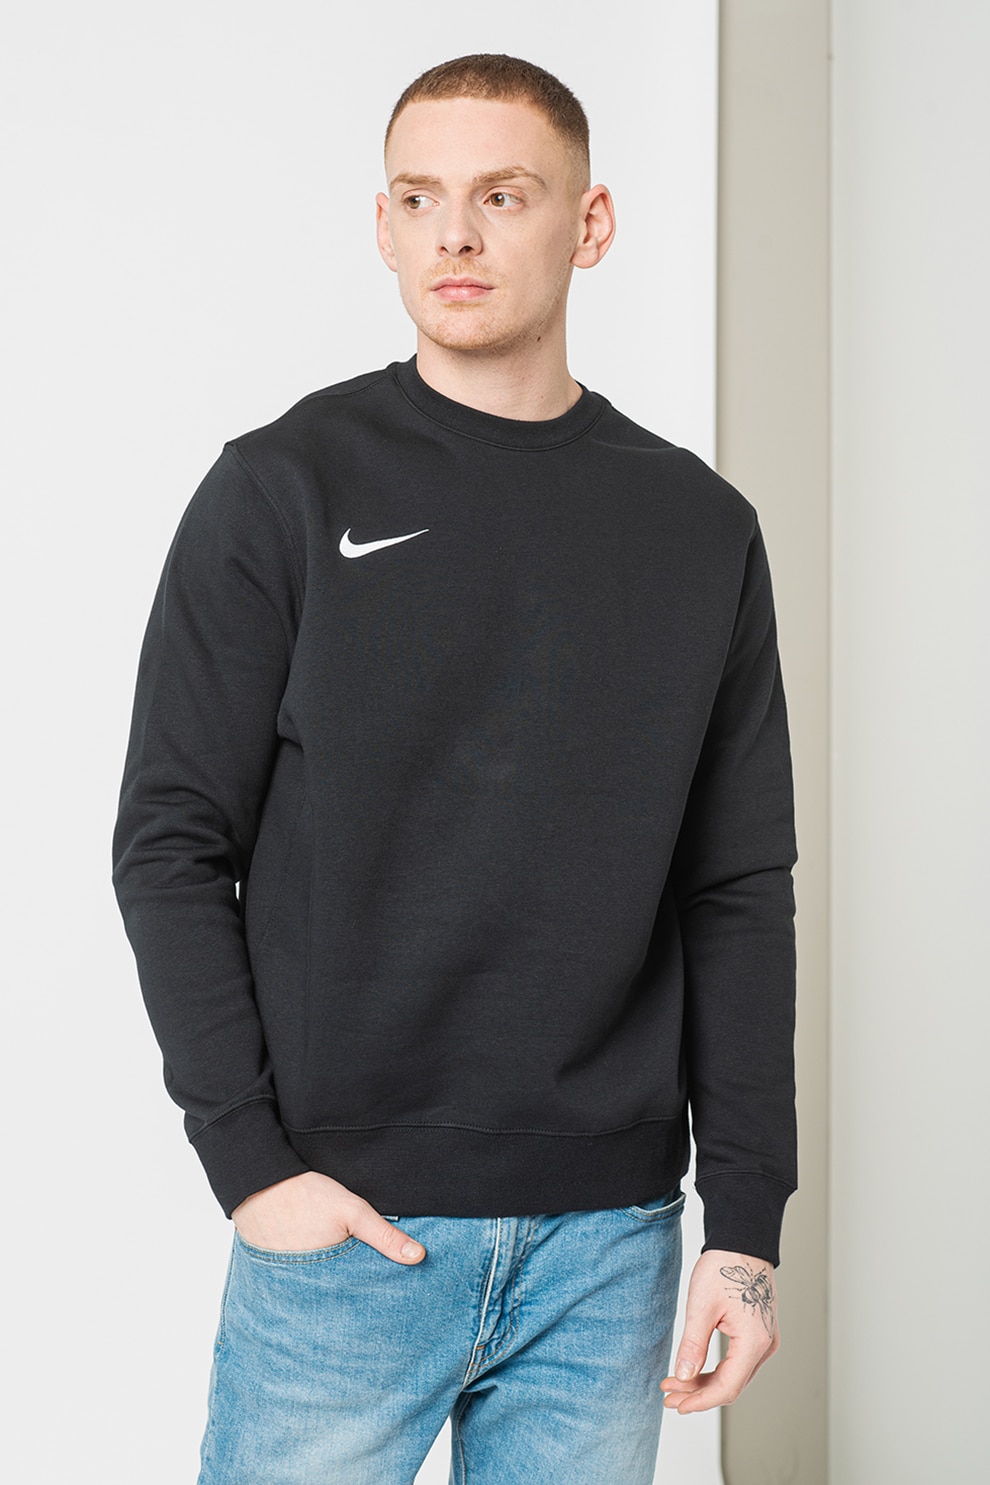 stimulate mate Rouse Nike, Bluza cu detaliu logo, pentru fotbal - eMAG.ro